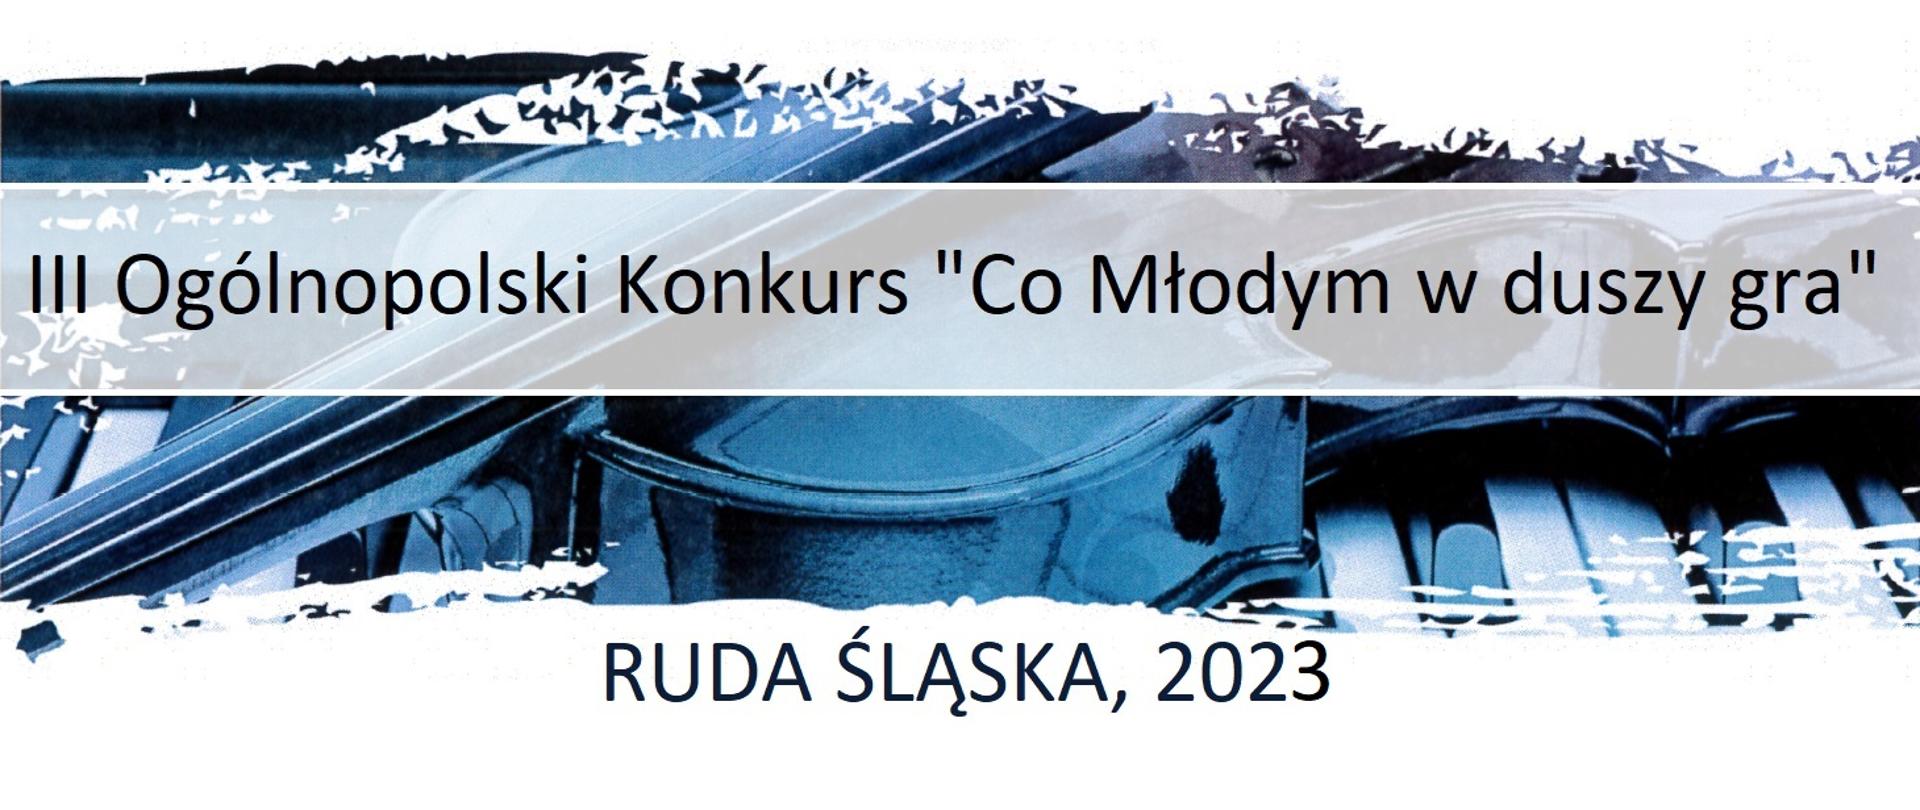 Nagłówek - białe tło z grafikę w odcieniach koloru niebieskiego, na której znajdują się skrzypiec położone na klawiaturze fortepianu i napisami III Ogólnopolski Konkurs "Co Młodym w duszy gra" oraz RUDA ŚLĄSKA, 2023.